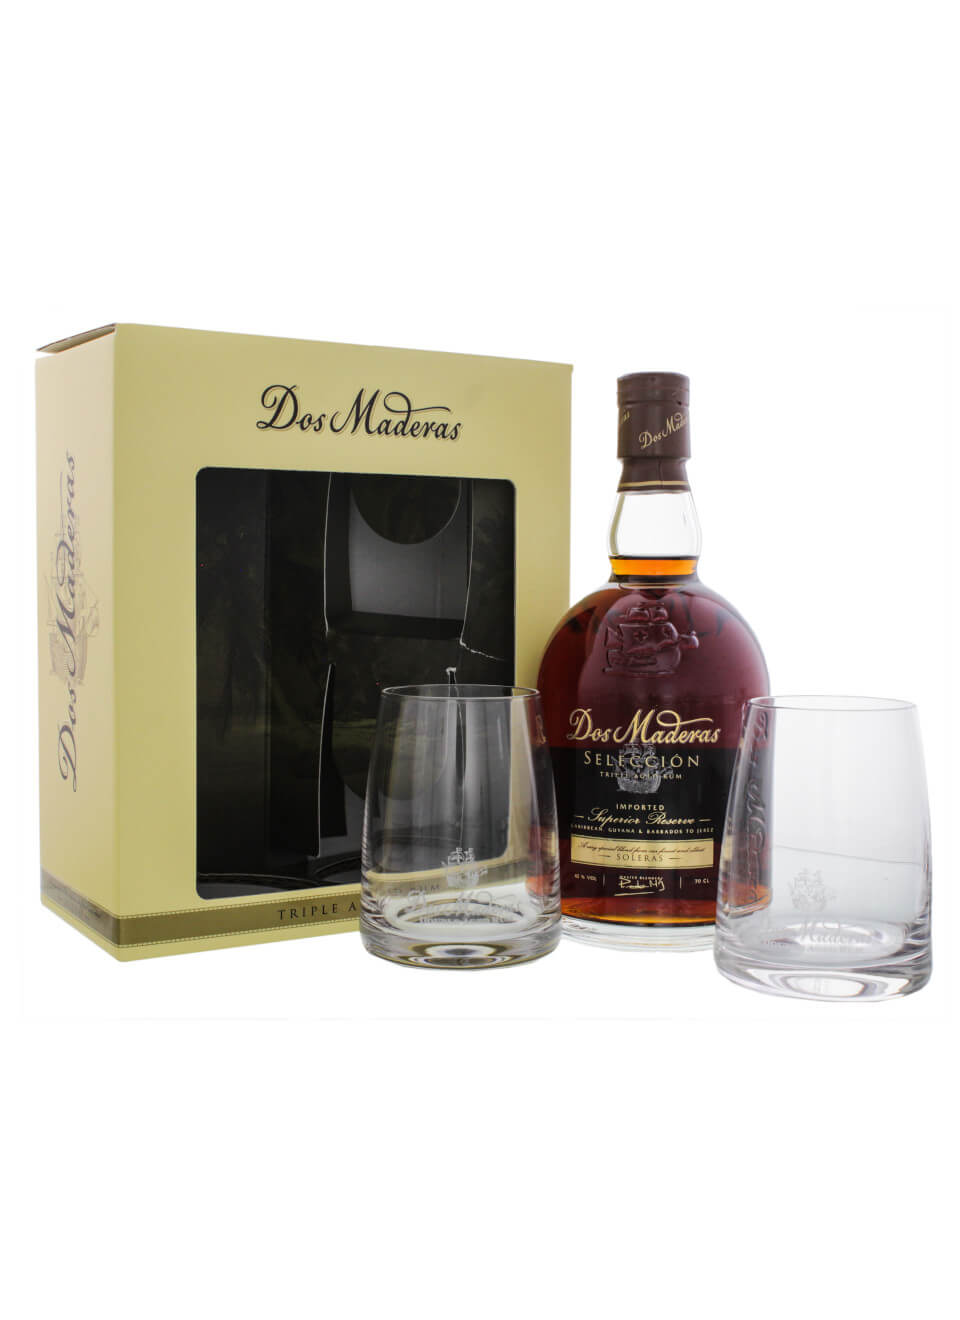 Dos Maderas Seleccion Rum 0,7 L mit zwei Gläsern und Geschenkverpackung  günstig kaufen | Spirituosenworld.de - Online Shop für Spirituosen und  Barzubehör